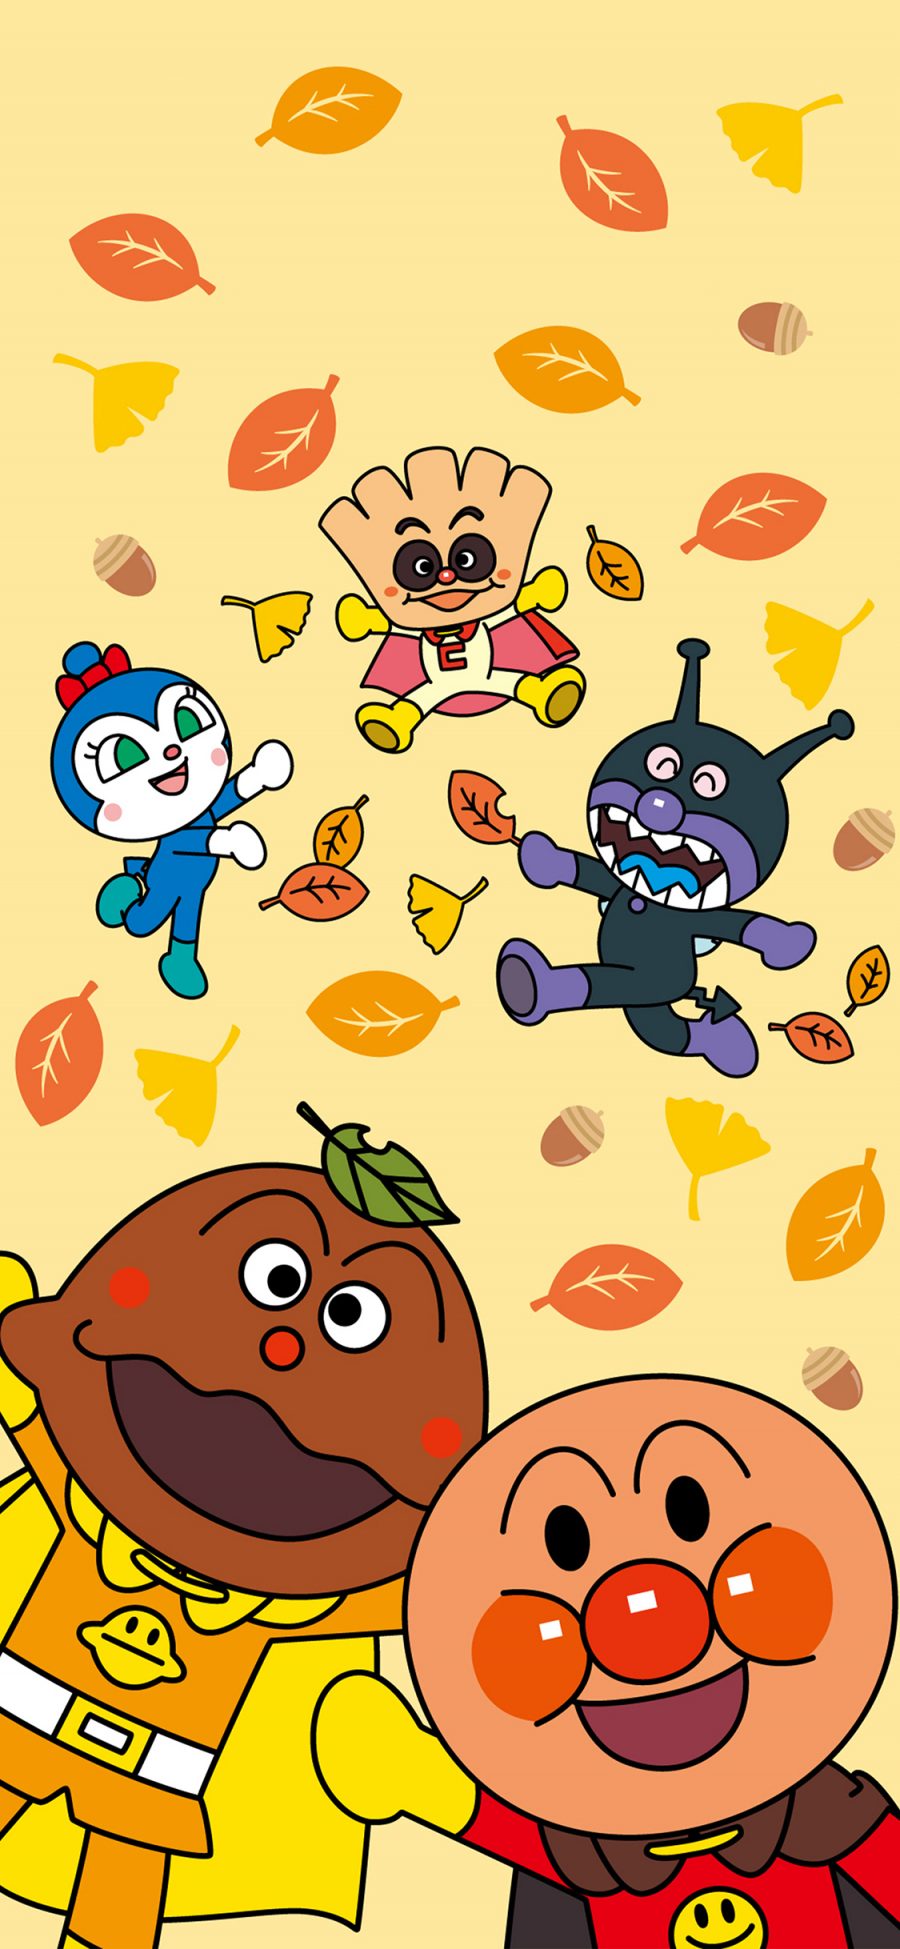 [2436×1125]面包超人 黄色 动画 日本 秋天 苹果手机动漫壁纸图片